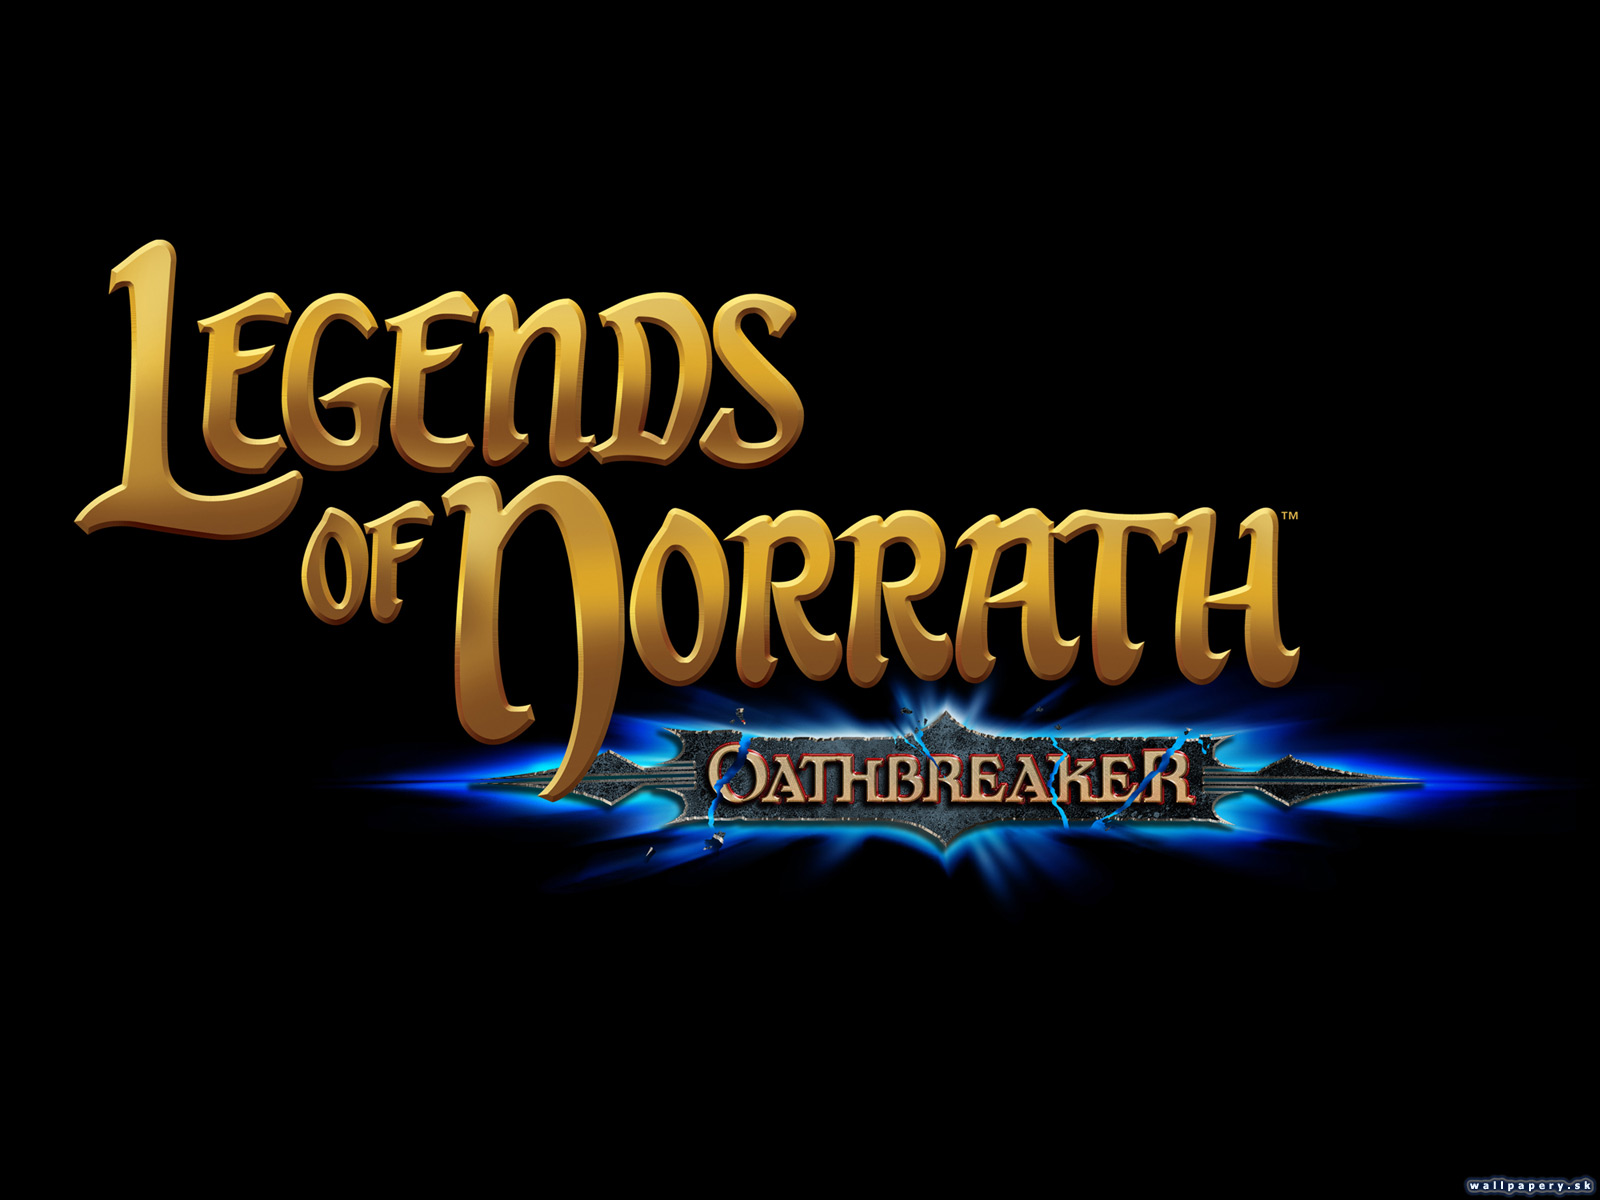 Legends of Norrath: Oathbreaker - wallpaper 2